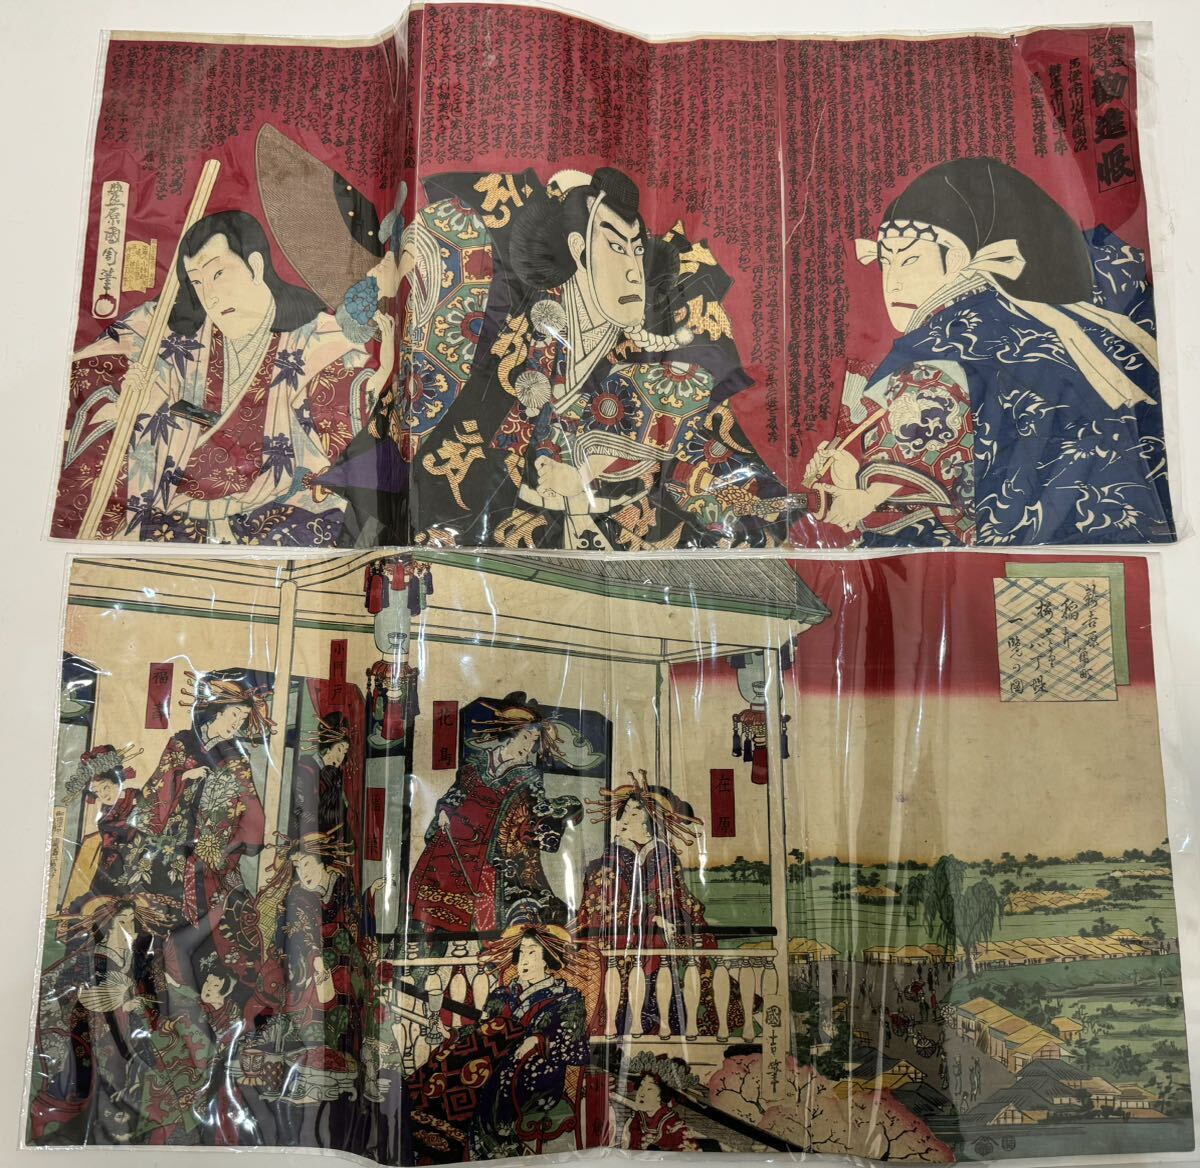 Grabado en madera ukiyo-e, formato largo, Meiji 5, Edomachi 1-chome, Kinpei Daikoku-ro, Hacho-tsutsumi, Toyokuni IV, una escena, Kunichika, Meiji 12, Kabuki Juhachiban no Uchi, Kanjincho, Tríptico, Cuadro, Ukiyo-e, Huellas dactilares, pintura kabuki, Cuadros de actores